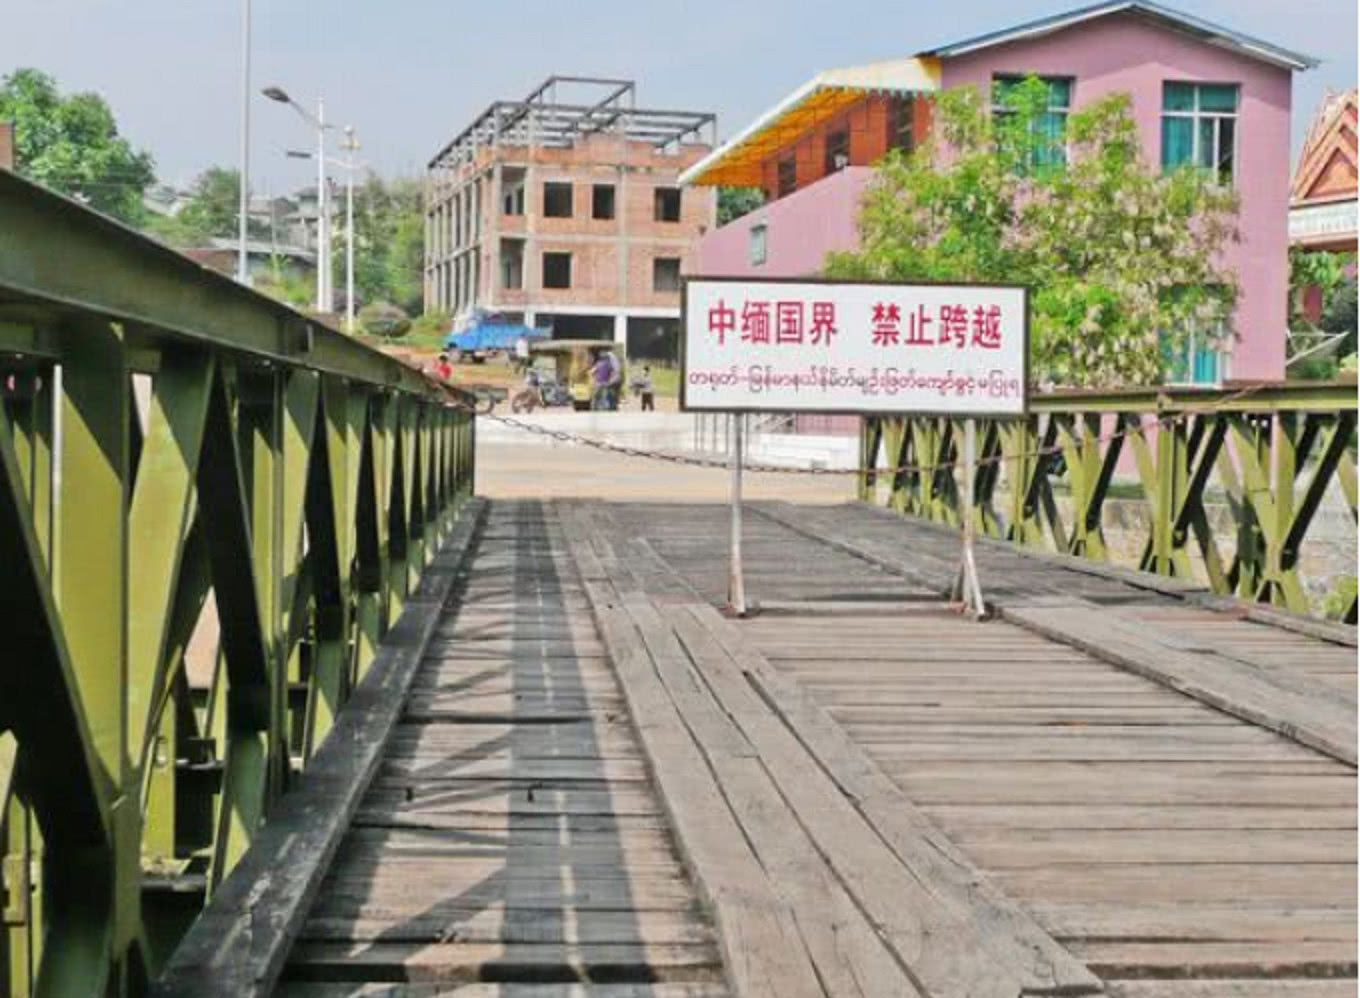 云南这个边境小镇,当地居民都有两个国籍,只要2元就能出国!